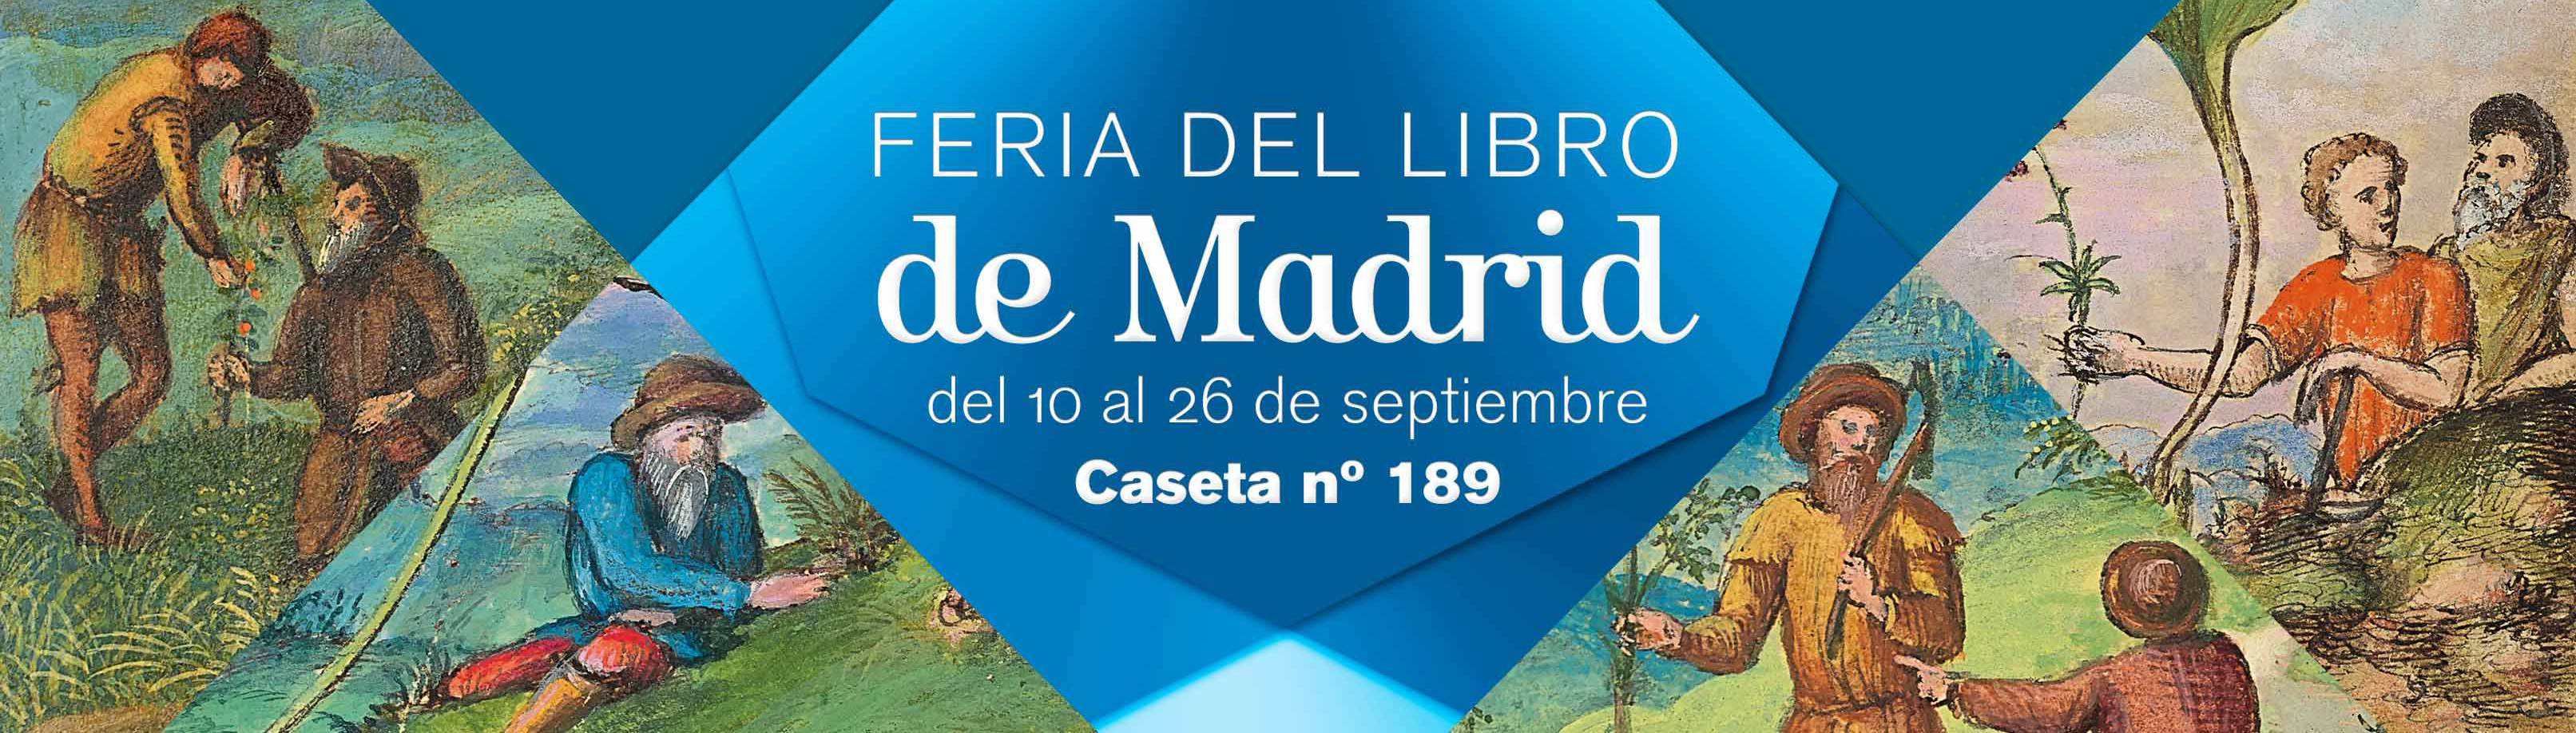 FERIA DEL LIBRO DE MADRID header 1